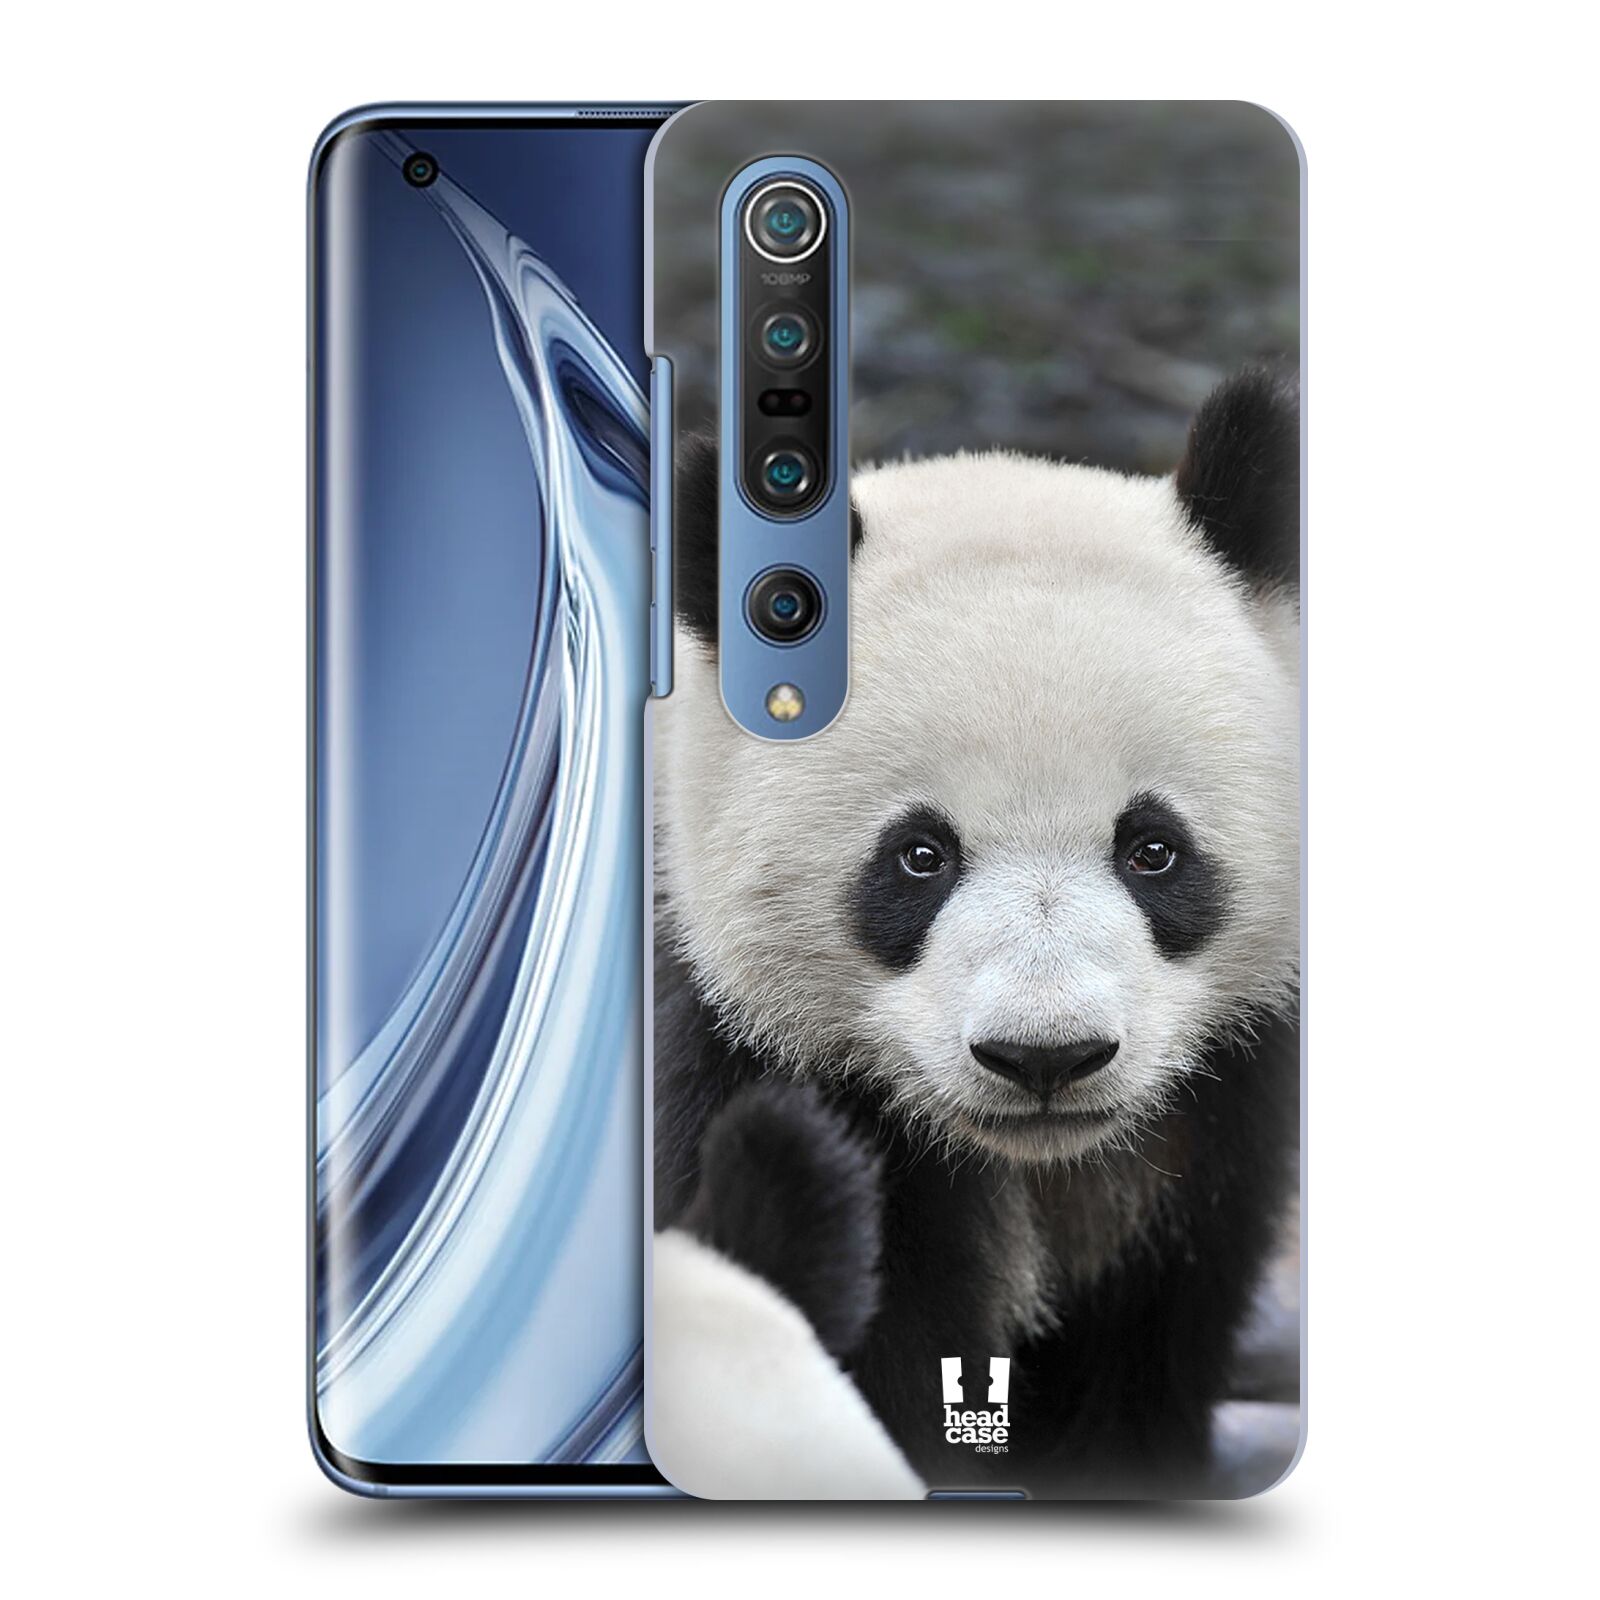 Zadní obal pro mobil Xiaomi Mi 10 / Mi 10 Pro - HEAD CASE - Svět zvířat medvěd panda